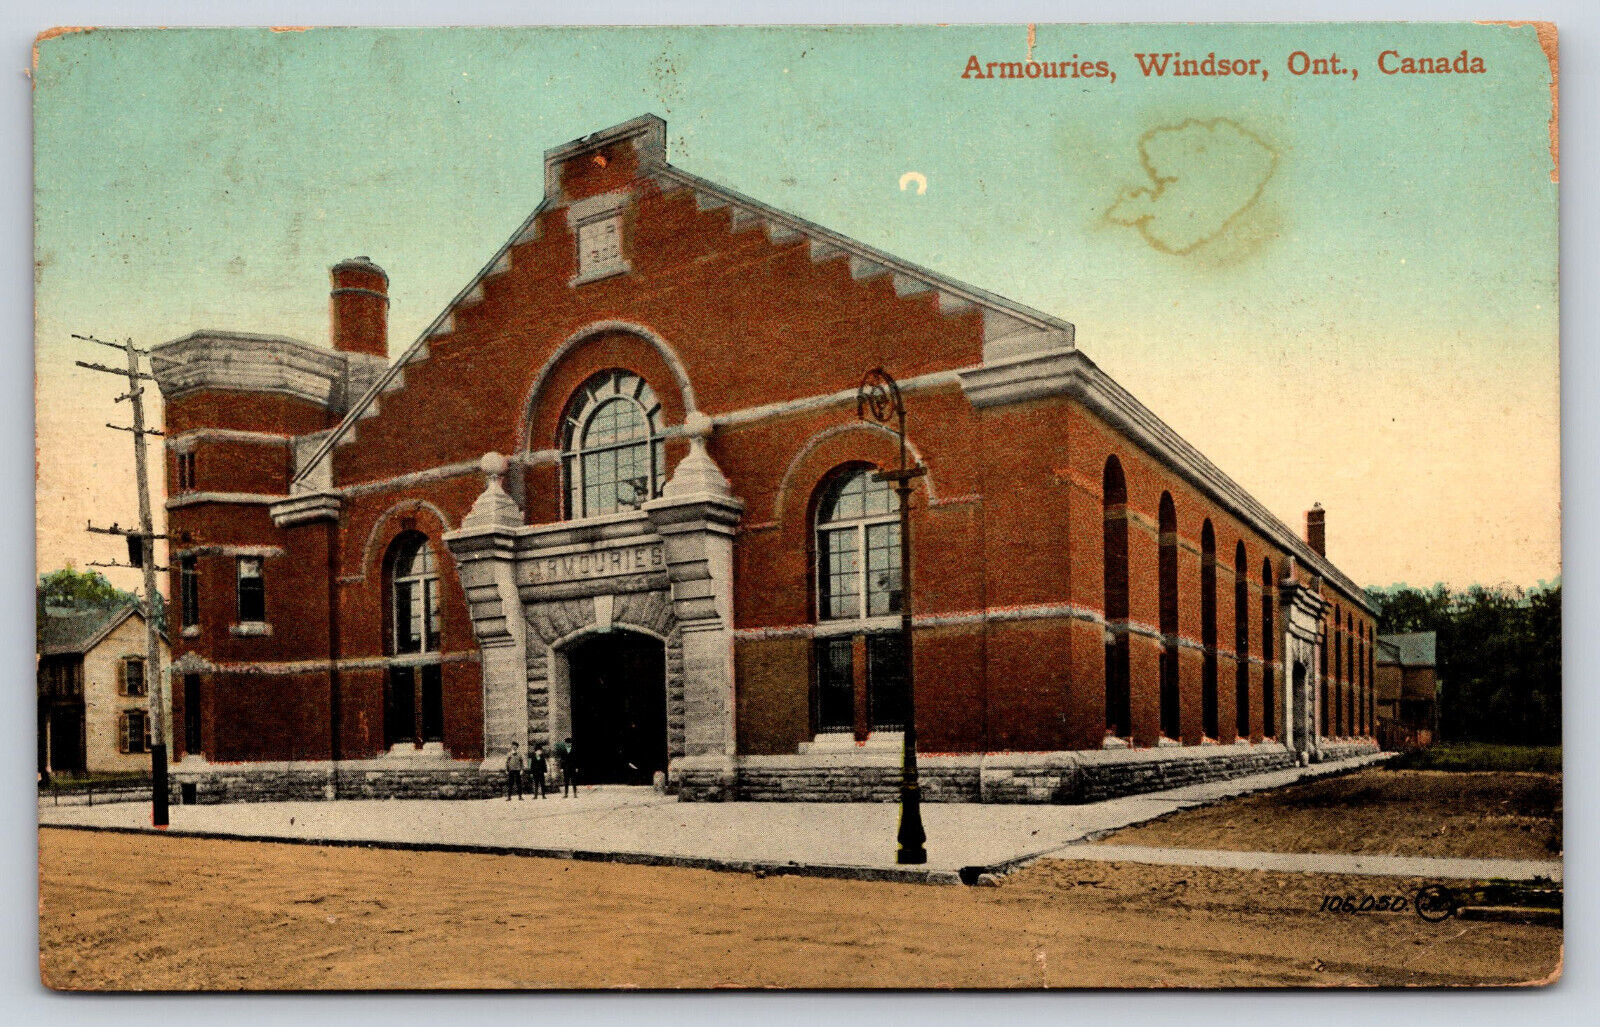 Ontario, Canada, Armouries Building, Vintage Antique 1915 Postcard